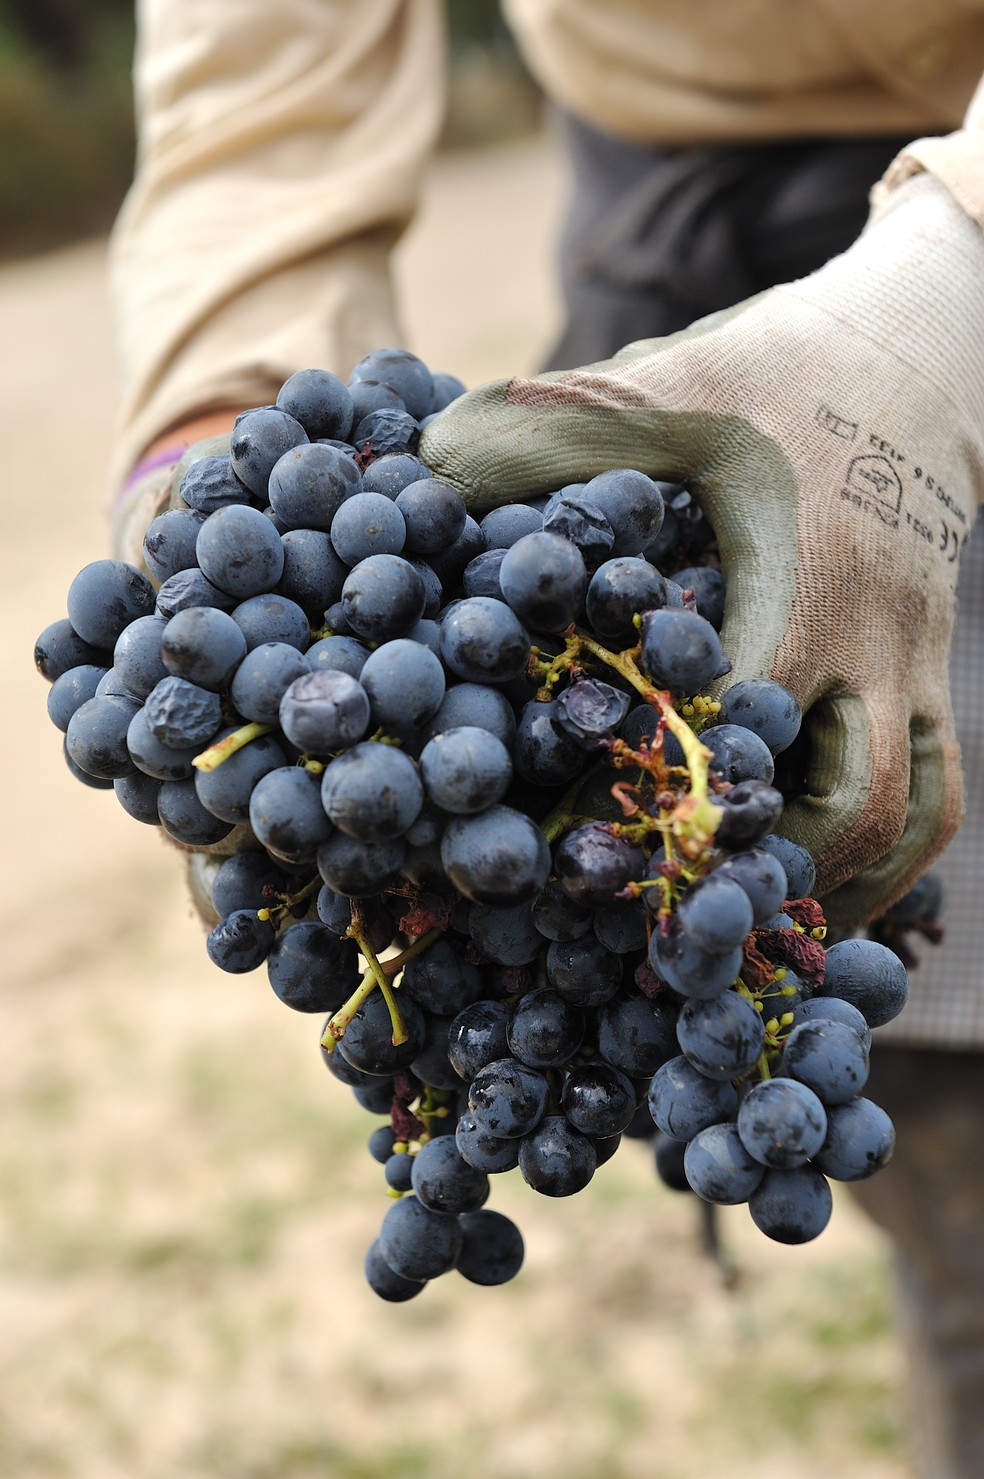 A Península de Setúbal produz vinhos brancos e tintos — Foto: Getty Images